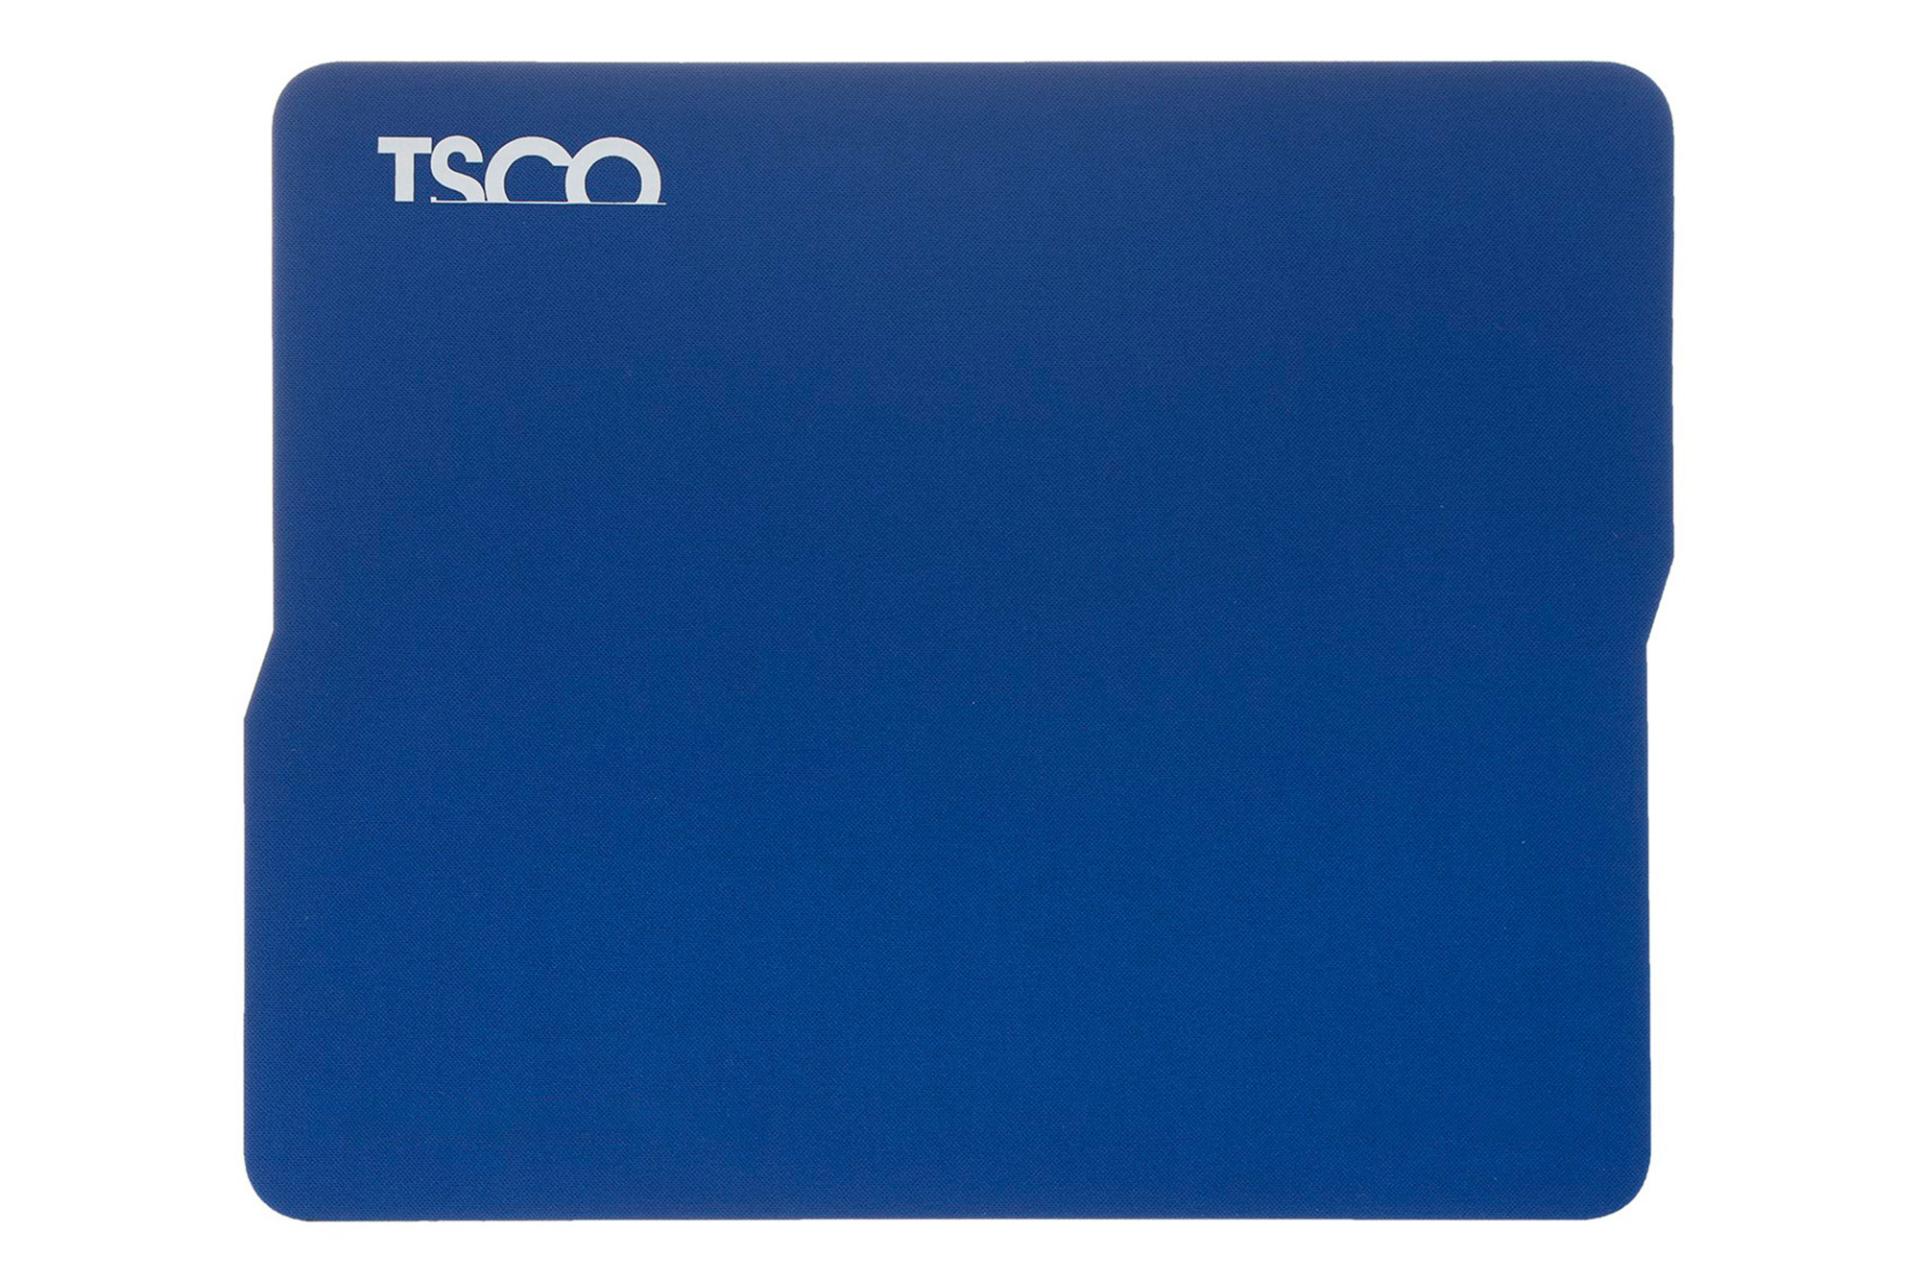 نمای جلوی رنگ آبی ماوس پد تسکو TMO 23